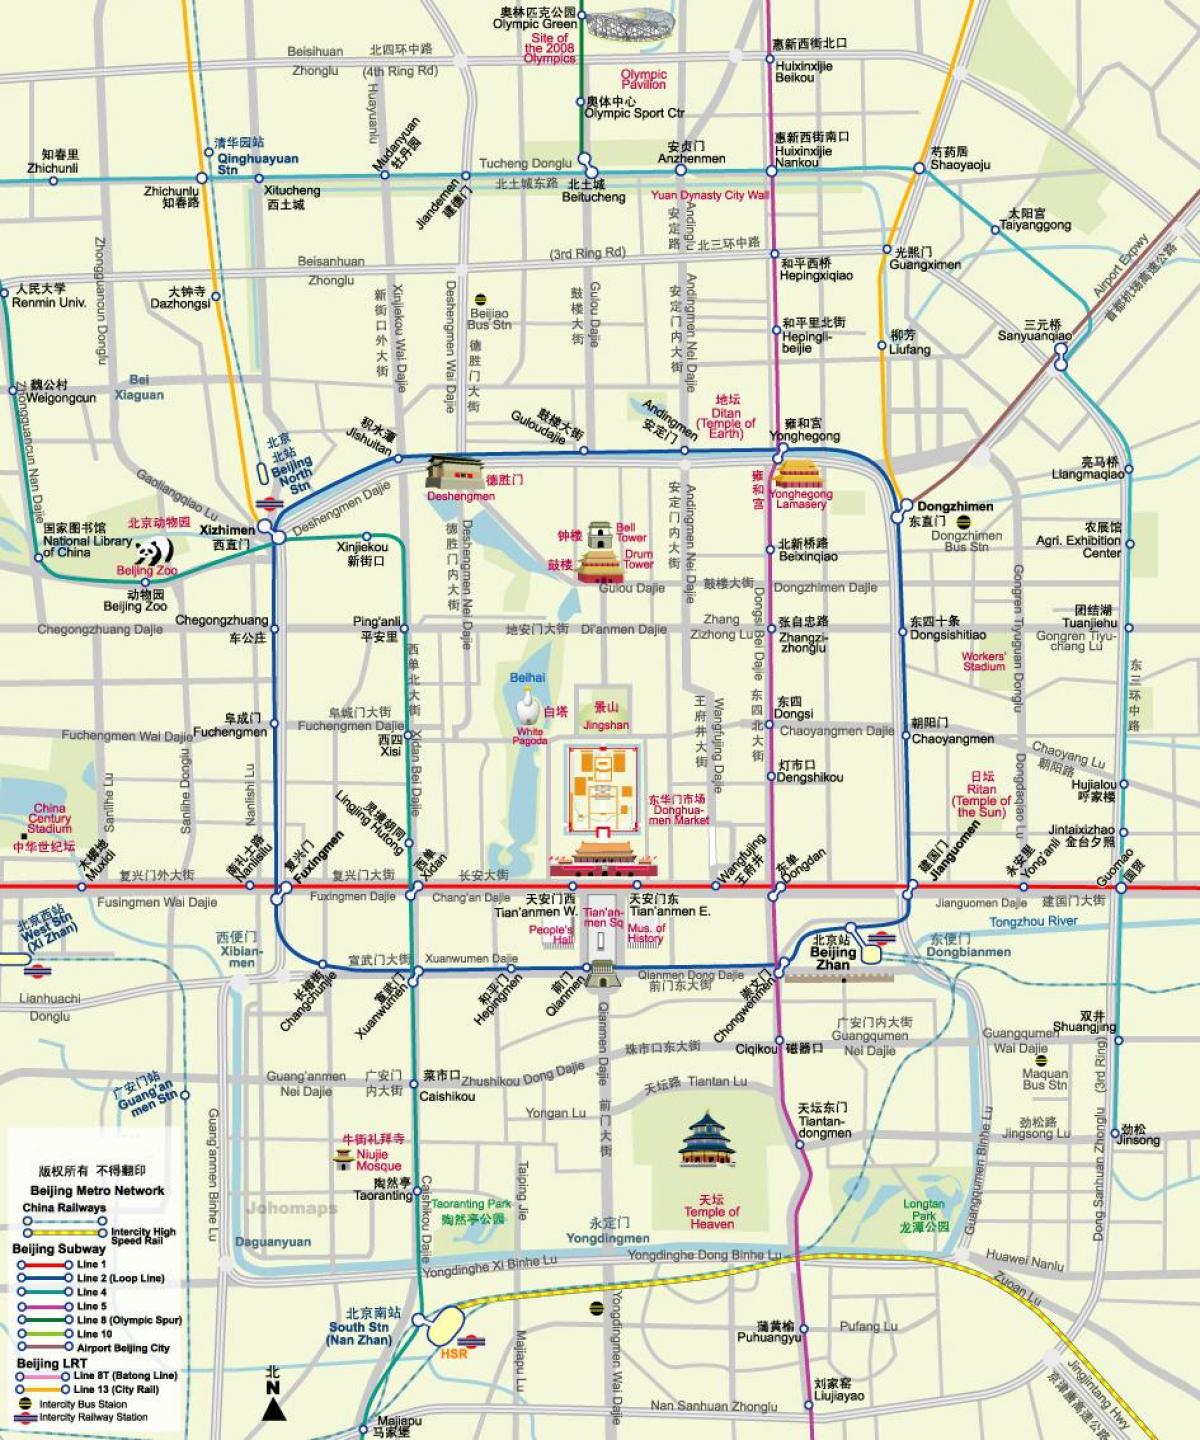 ramani ya Beijing subway ramani na vivutio vya utalii